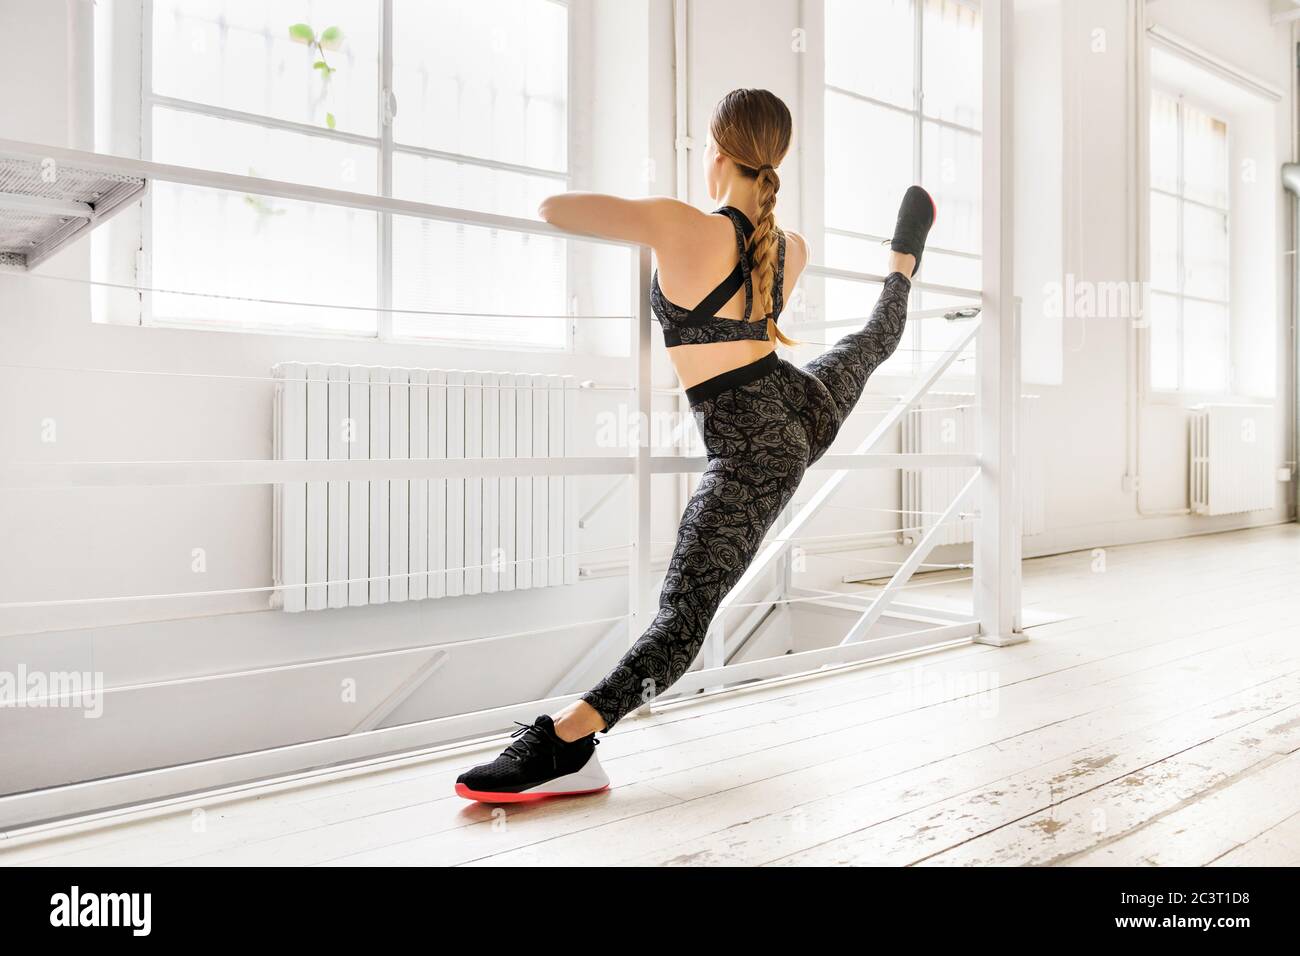 Frau, die eine frontale geteilte Yoga-Pose mit einer Bar in einer Rückansicht zeigt getönte Muskeln in einem High-Key-Fitnessstudio in einem Gesundheits-und Fitness-Konzept mit Copyspac Stockfoto